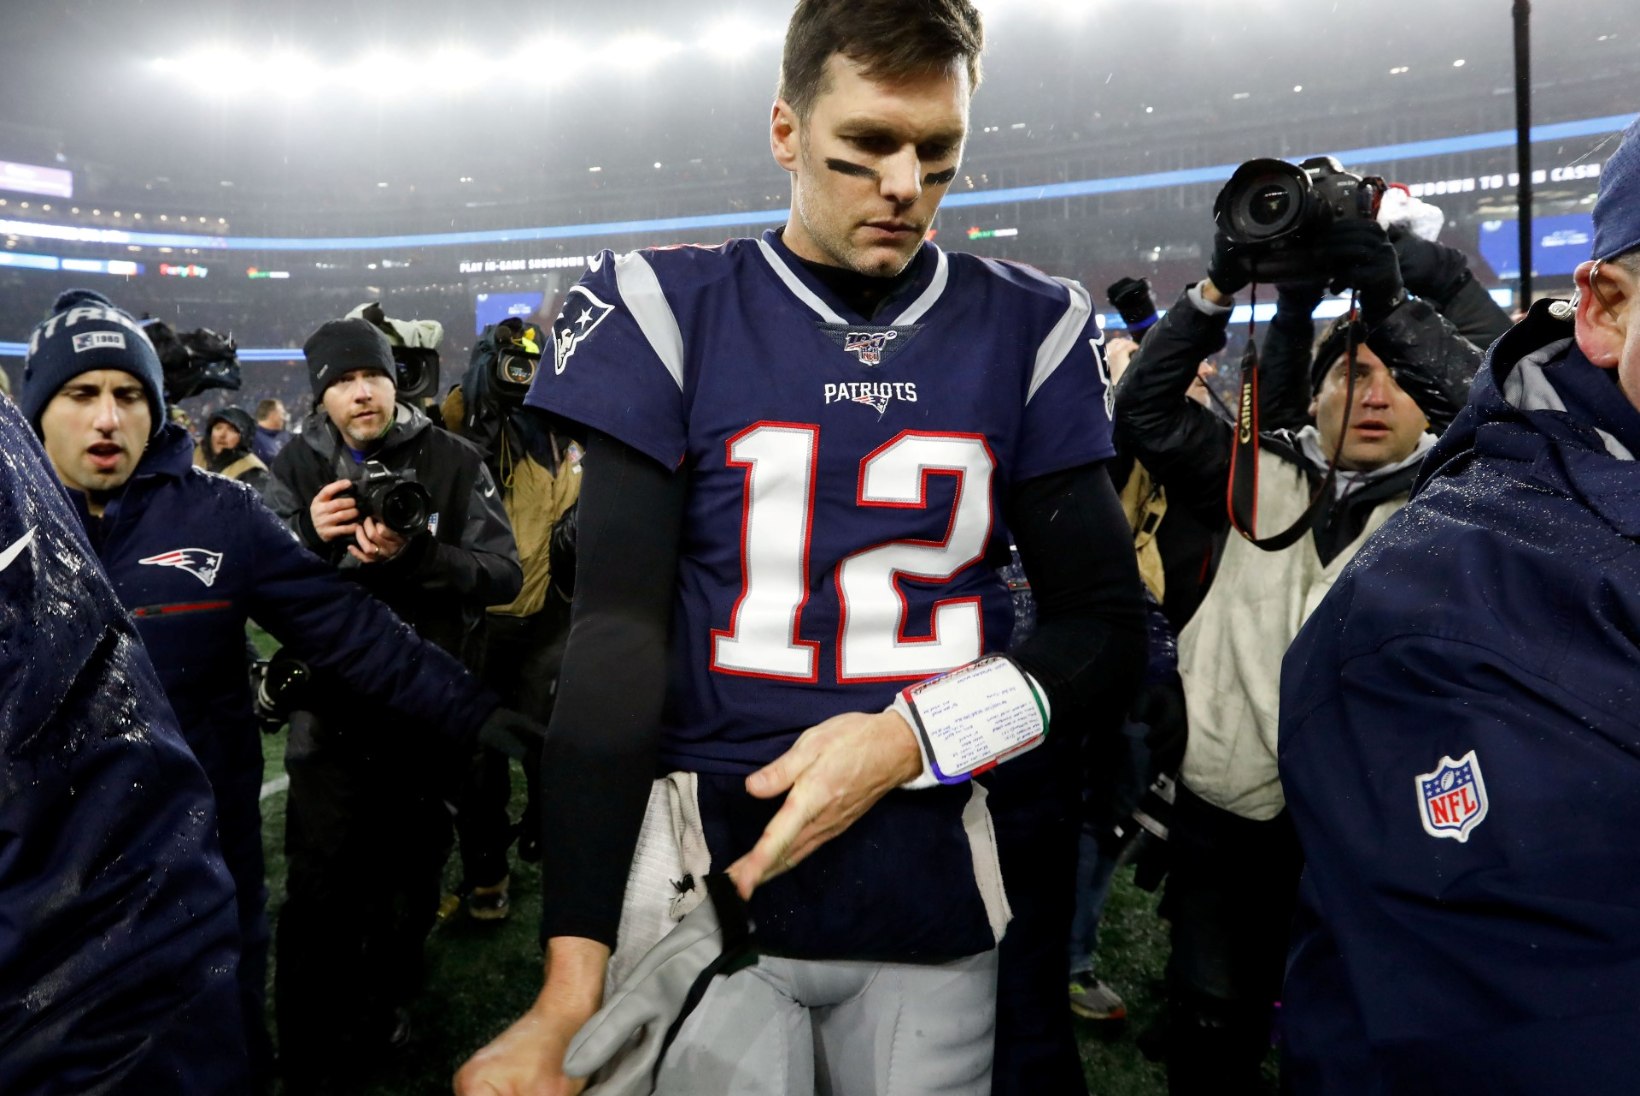 DÜNASTIA LÕPP? Legendaarne Tom Brady põrus täielikult! Kas karjäär on läbi?